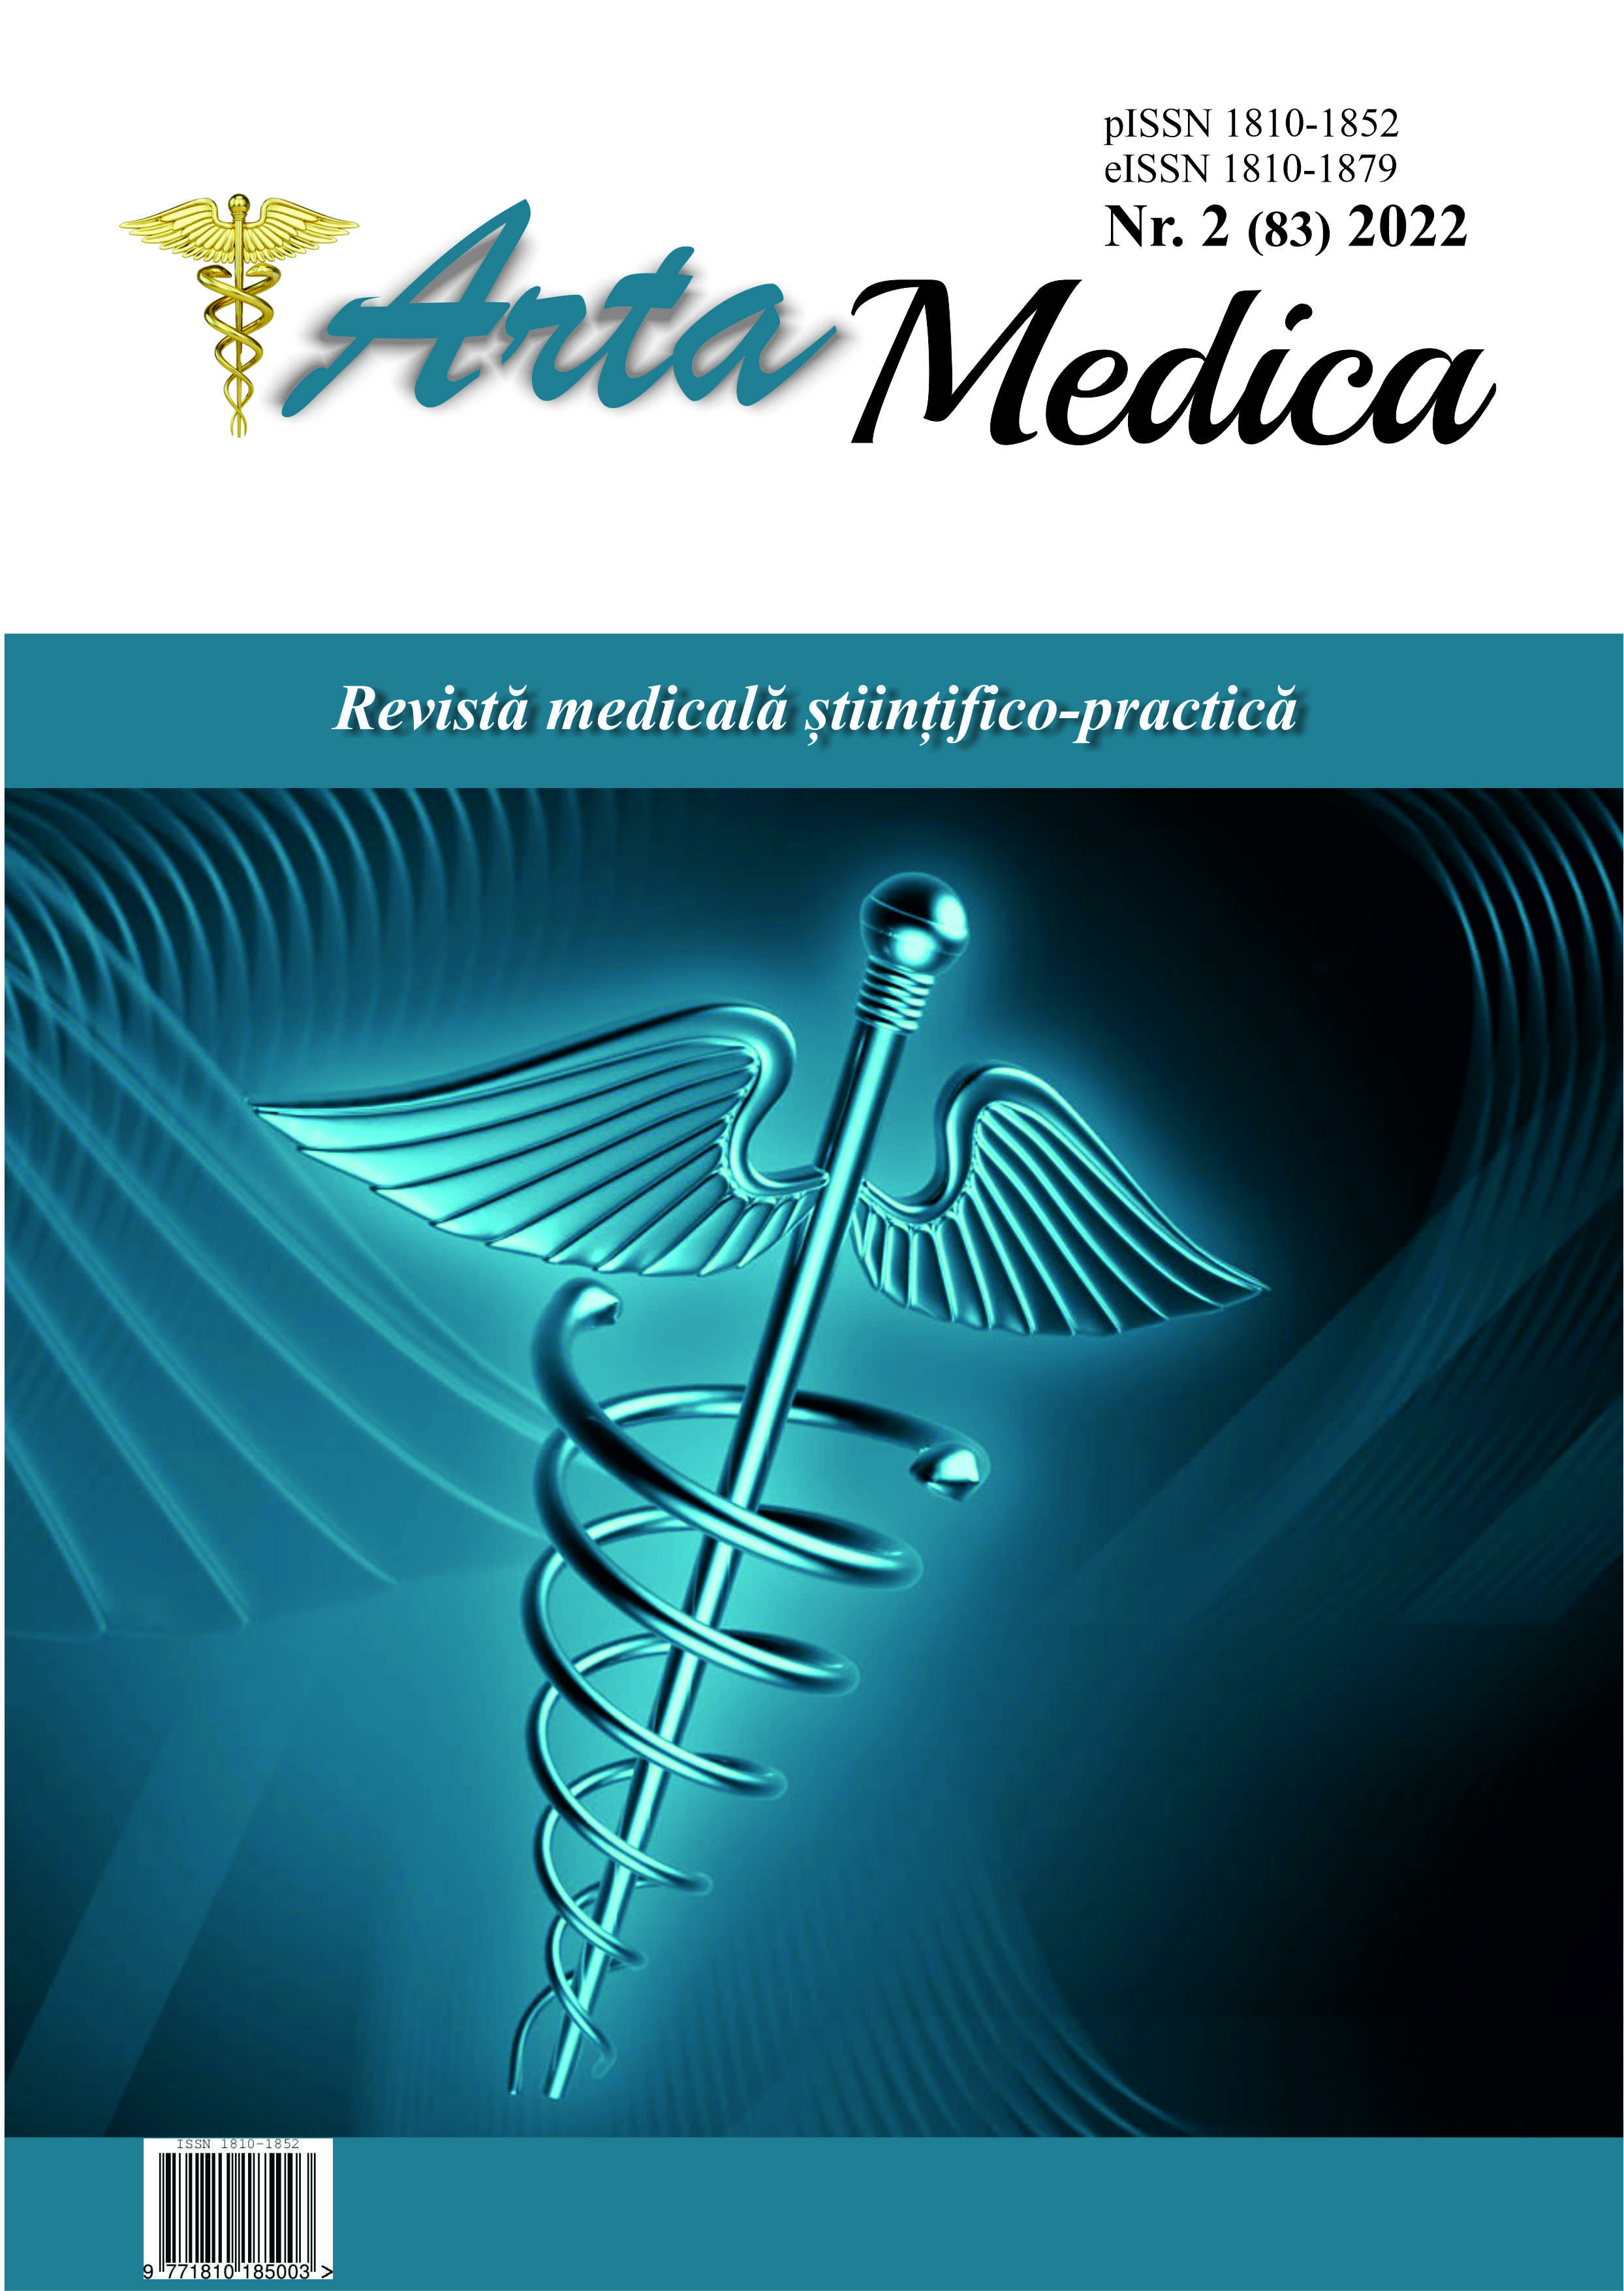 					View Vol. 83 No. 2 (2022): Arta Medica
				